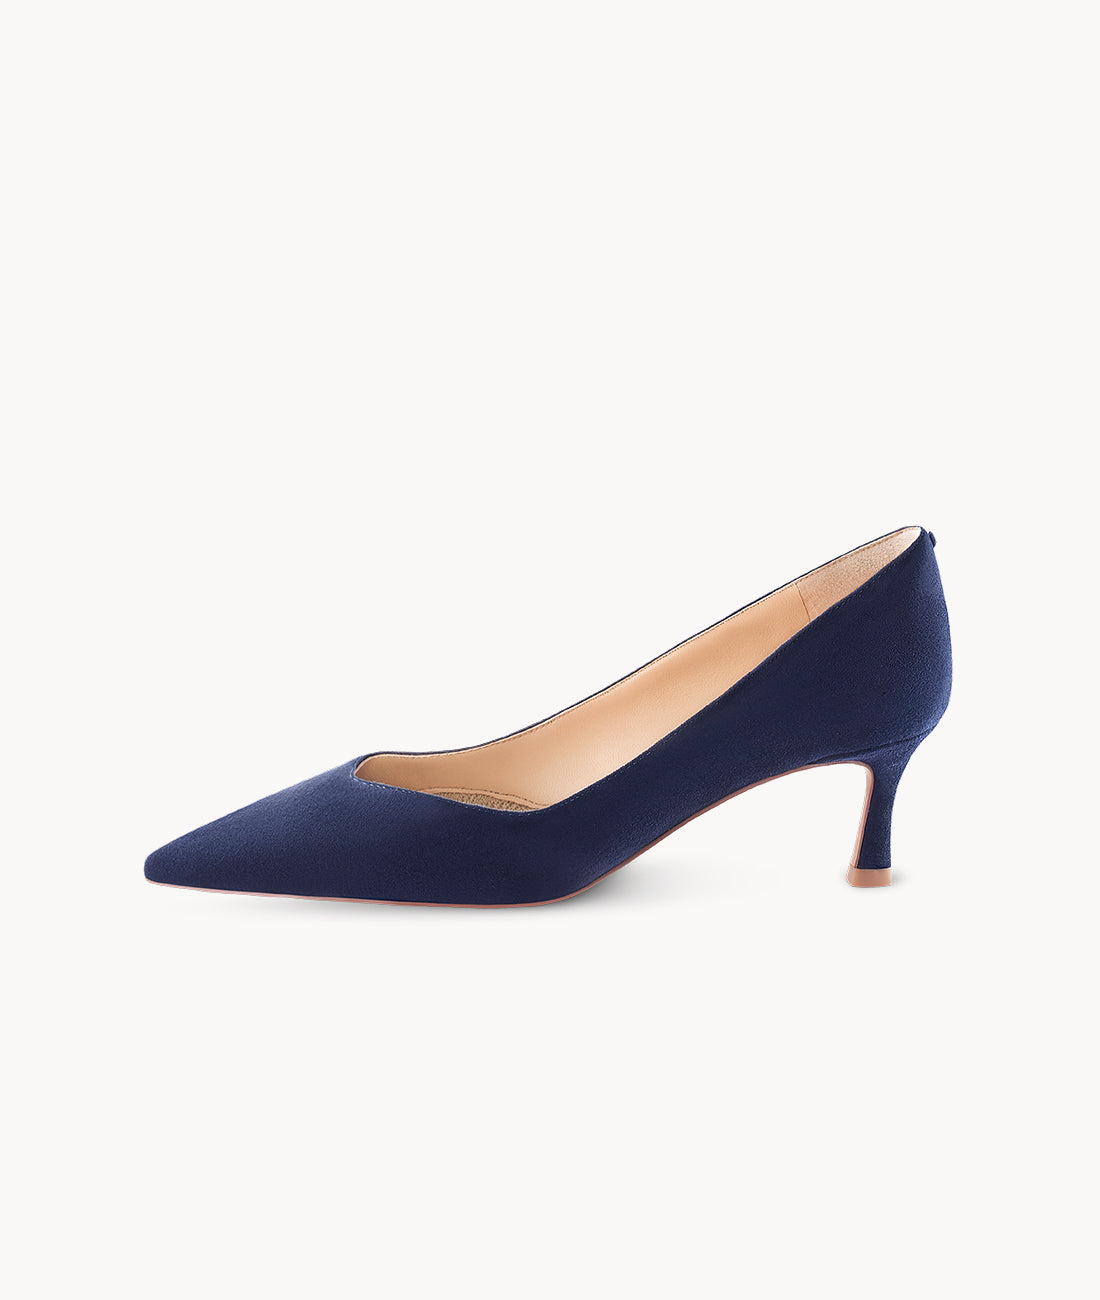 Blue women's closed toe heels